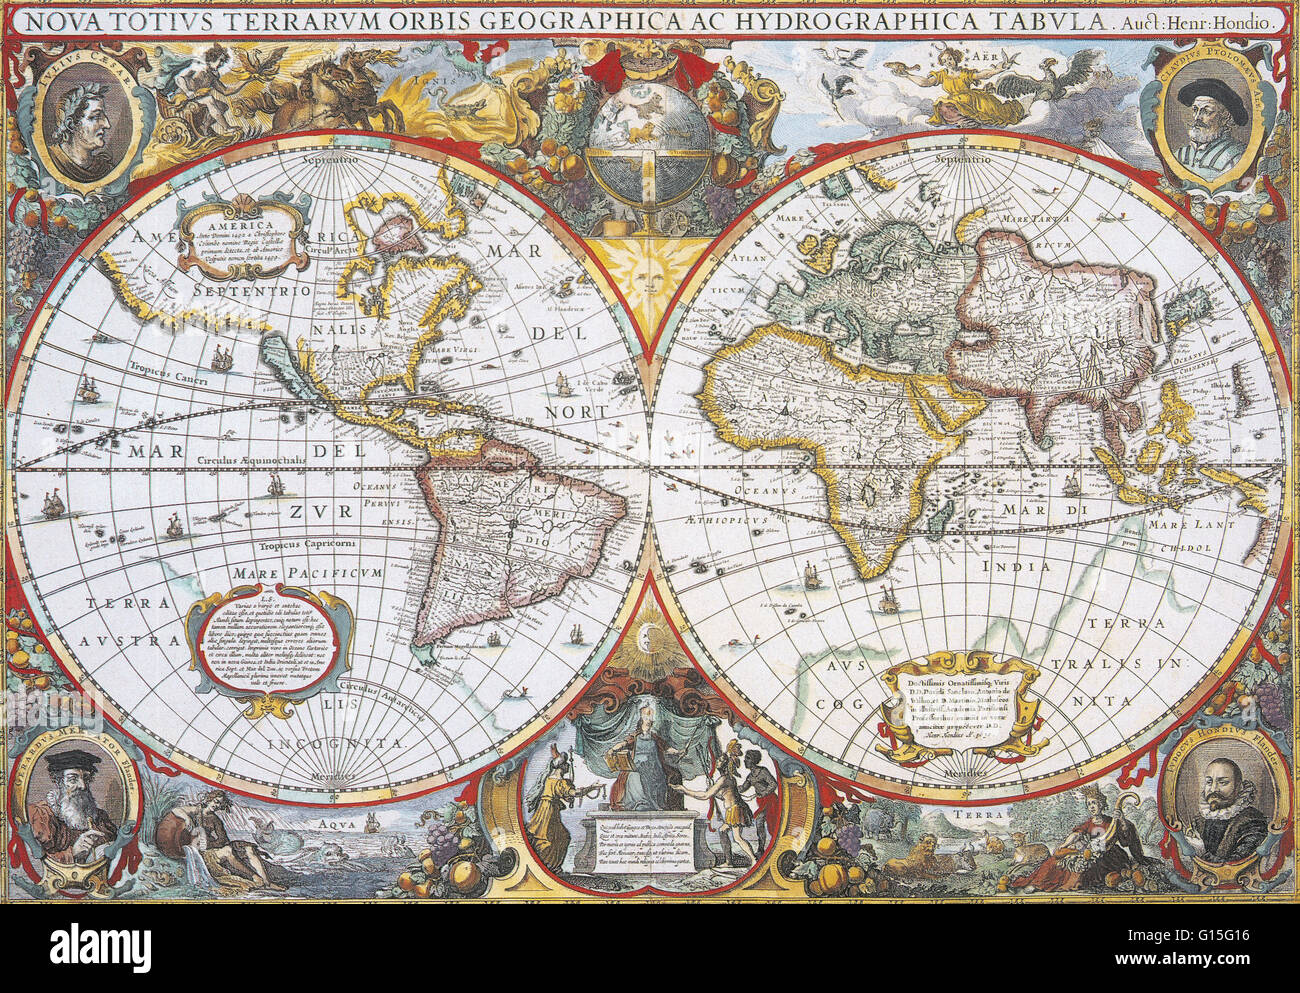 Hondius Weltkarte, 1630. Die Quintessenz Weltkarte der Periode zeigt vier Elemente, vier Kontinente, die Sonne, Mond und Sternen umgeben die Karte. In den vier Ecken sind Porträts von den Kartographen, Ptolemäus, Mercator und Caesar. Stockfoto